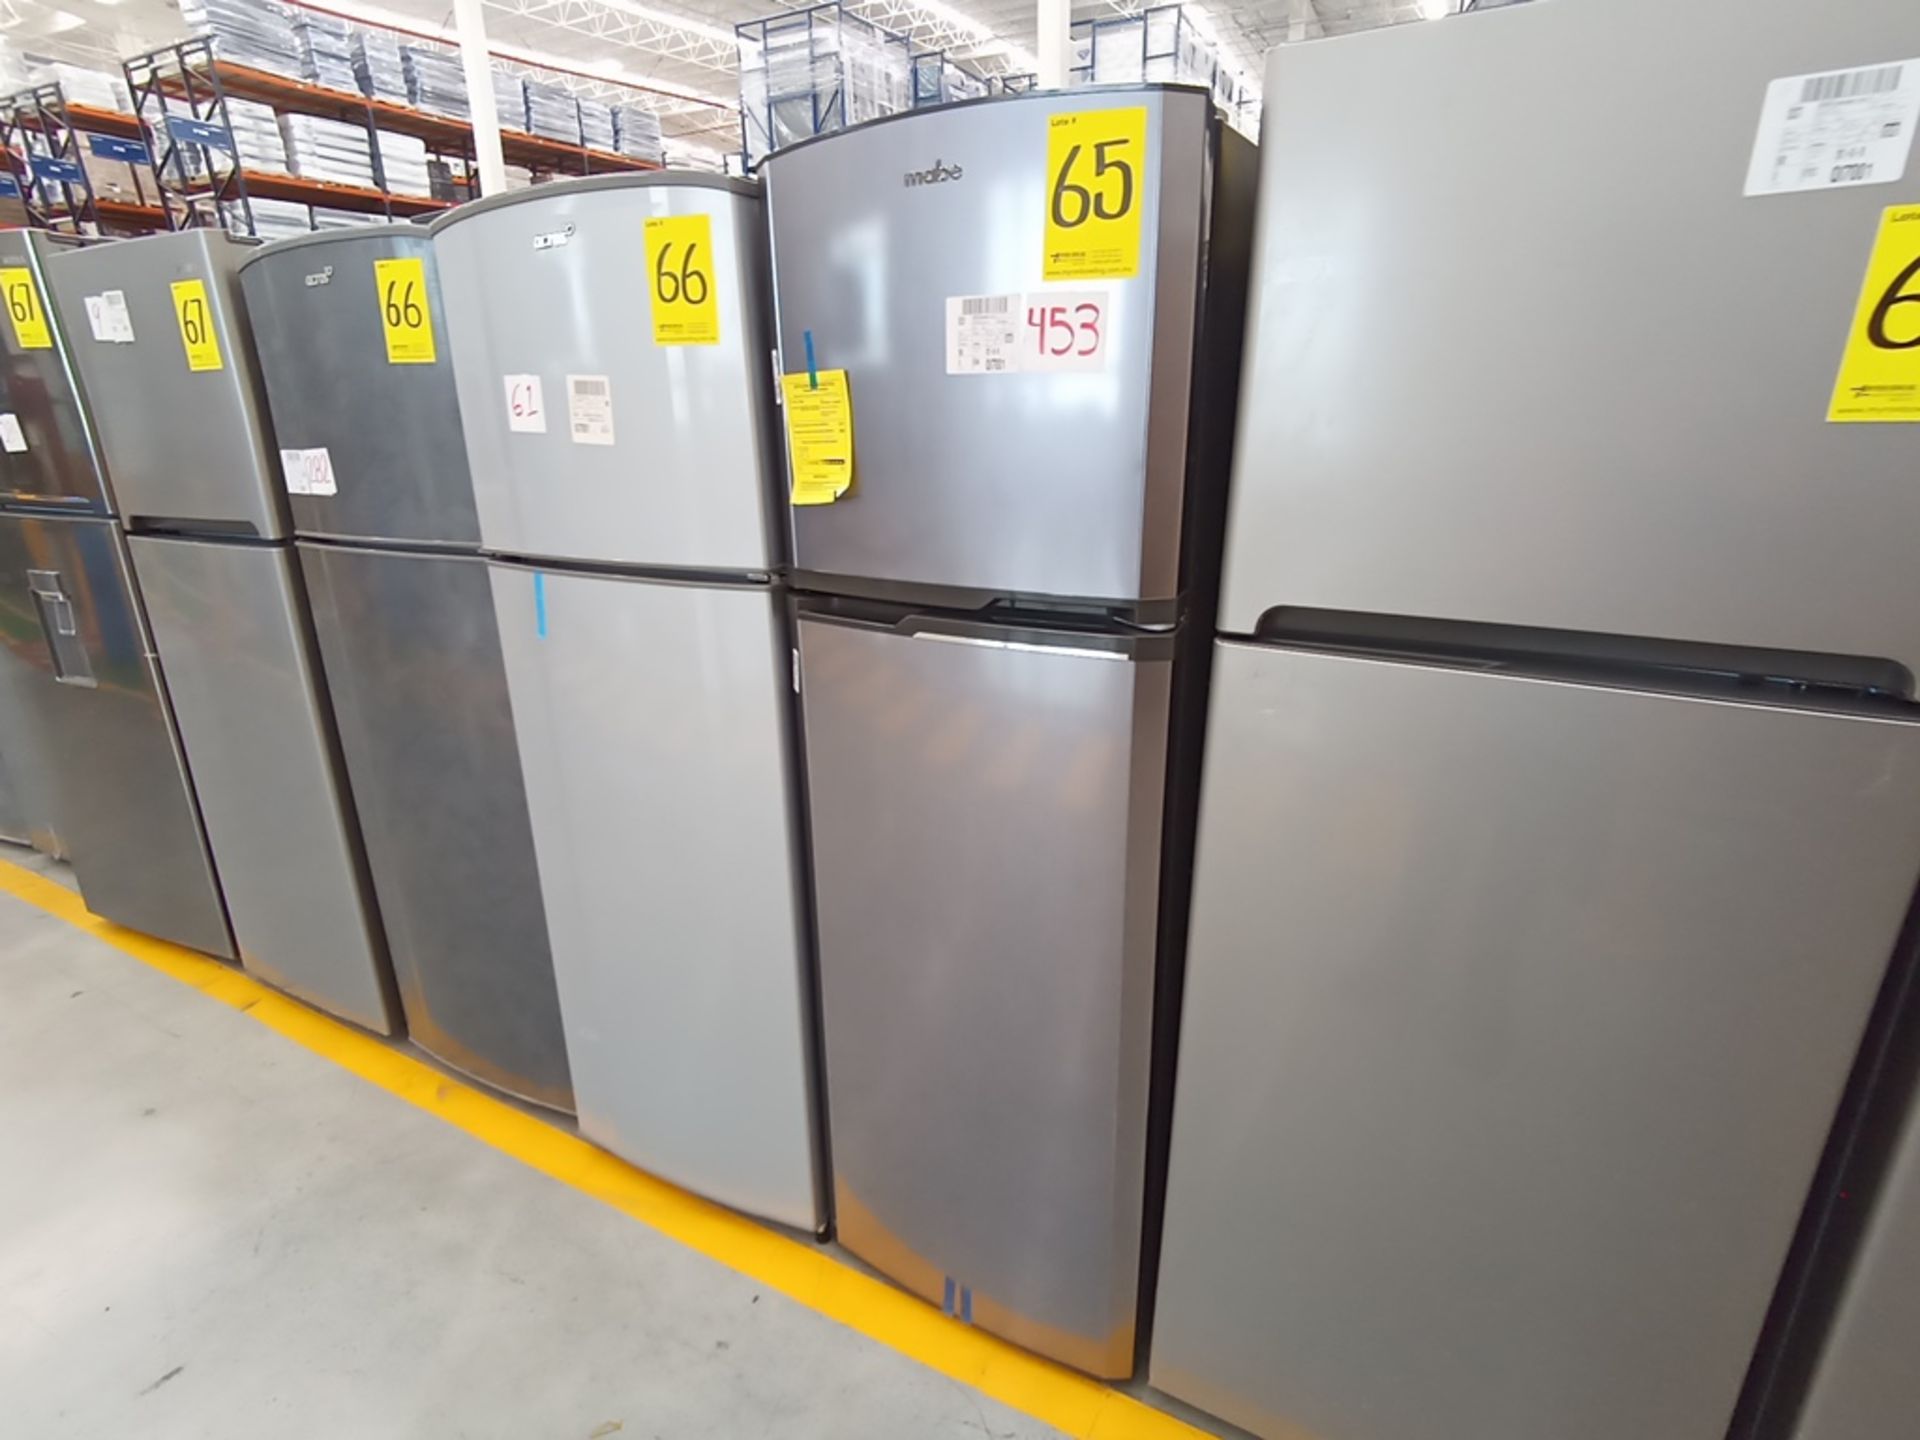 Lote de 2 Refrigeradores contiene: 1 Refrigerador Marca Winia, Modelo DFR-32210GNV, Serie MR216N130 - Image 3 of 15